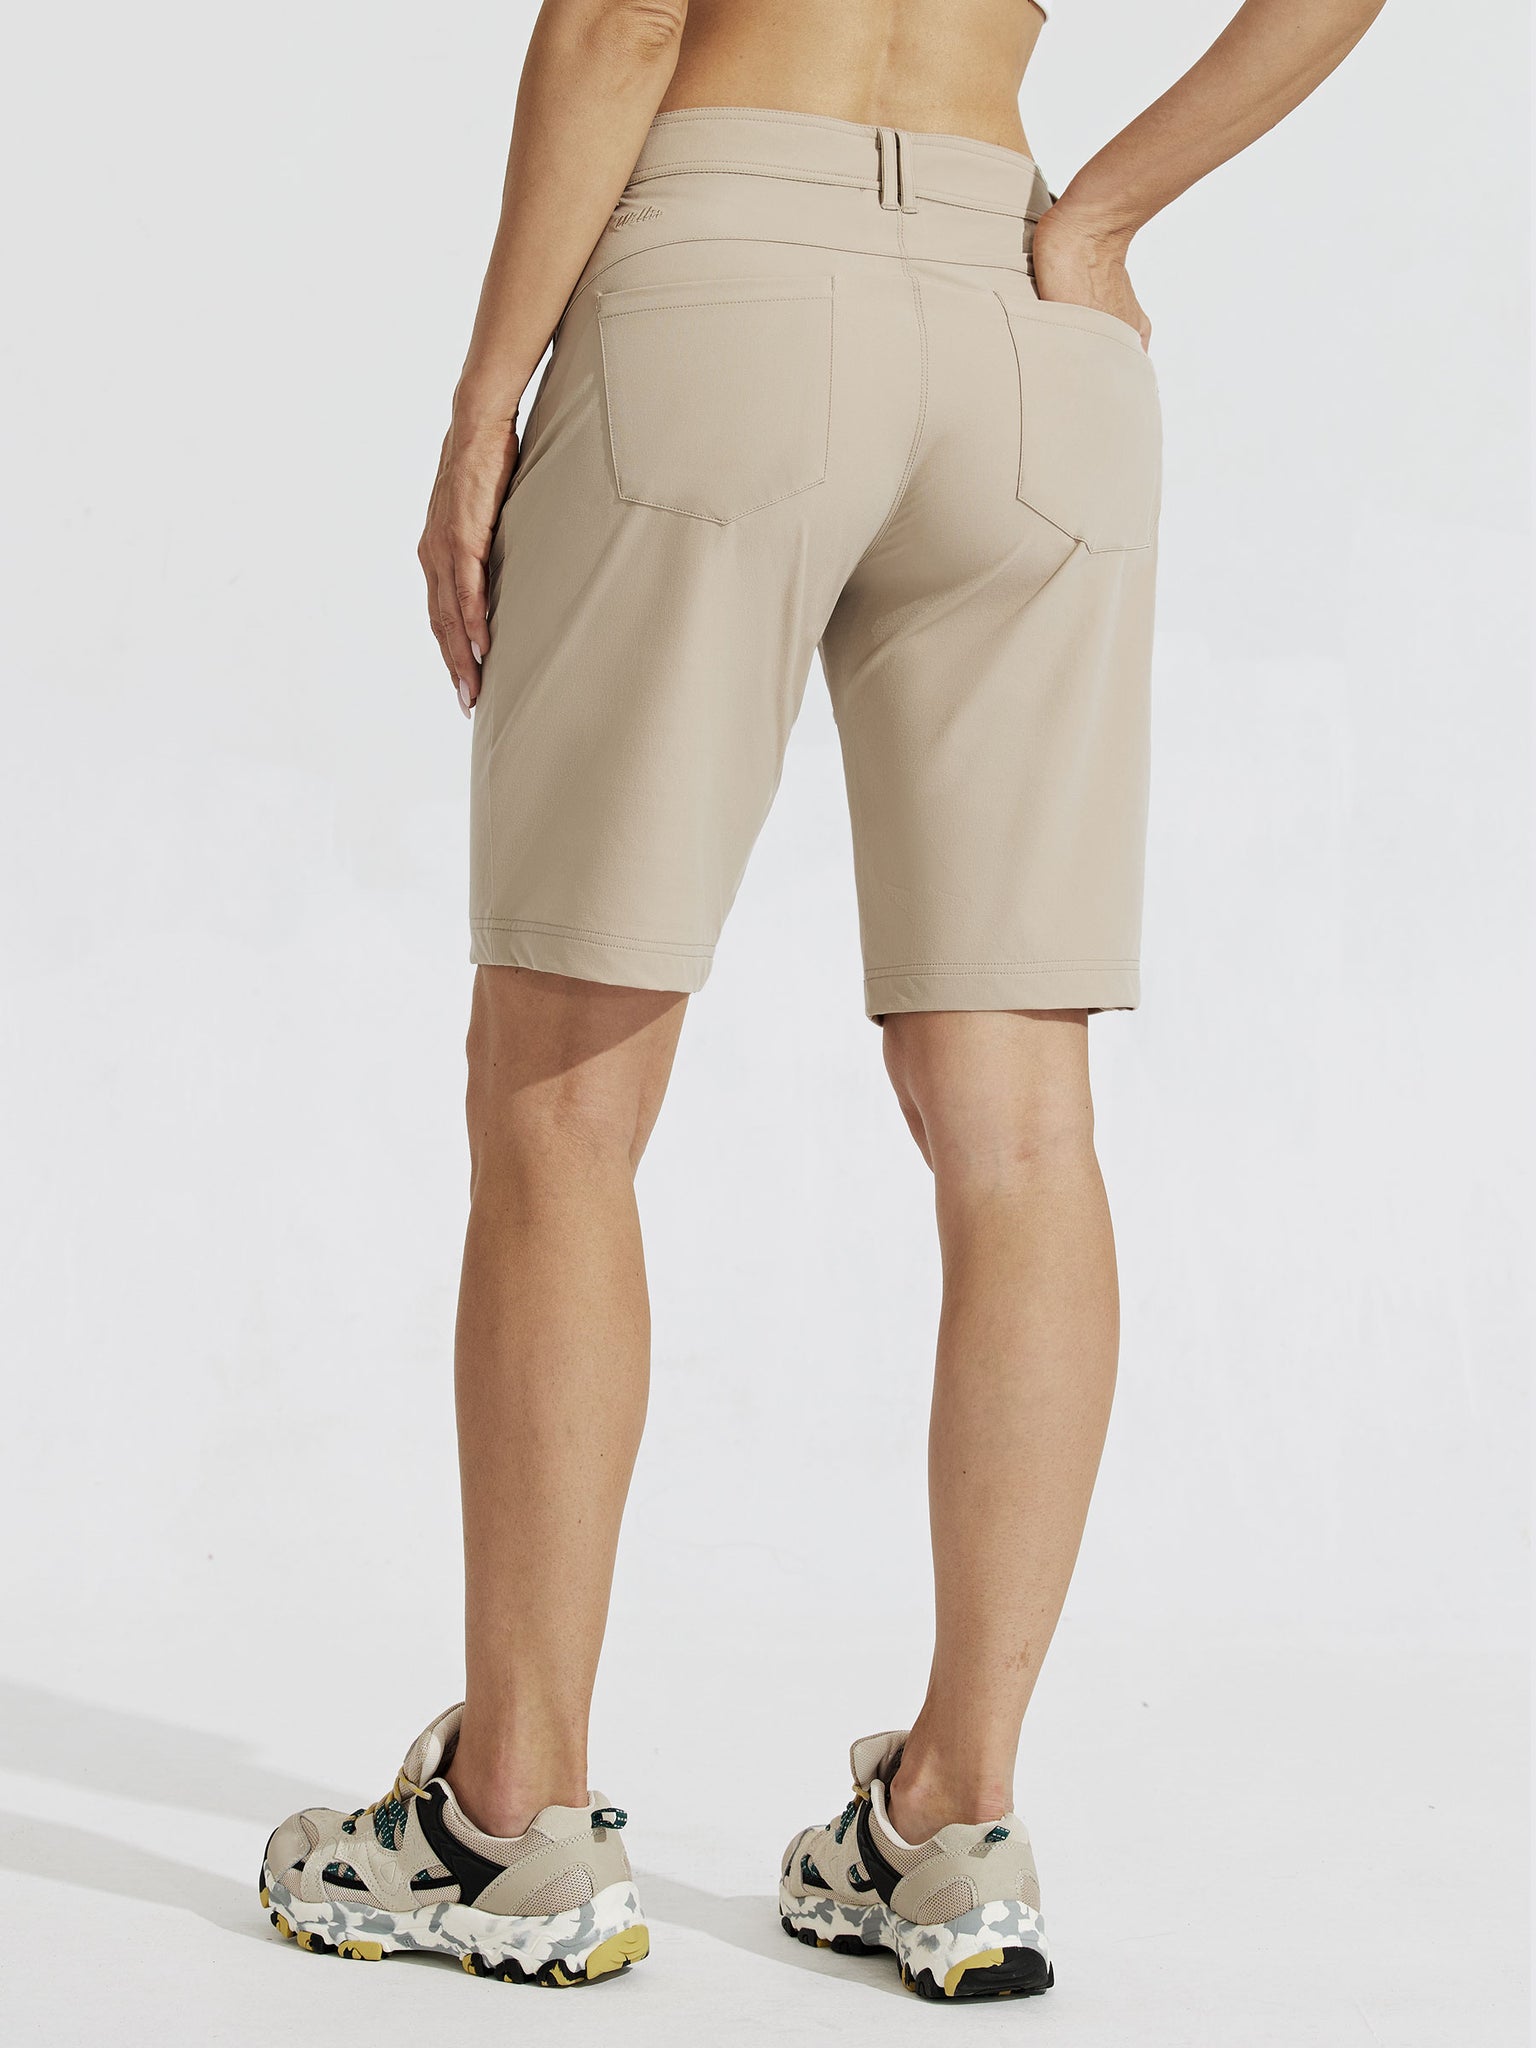 Women's Slim Leg Golf Shorts 10Inch_Khaiki_model2